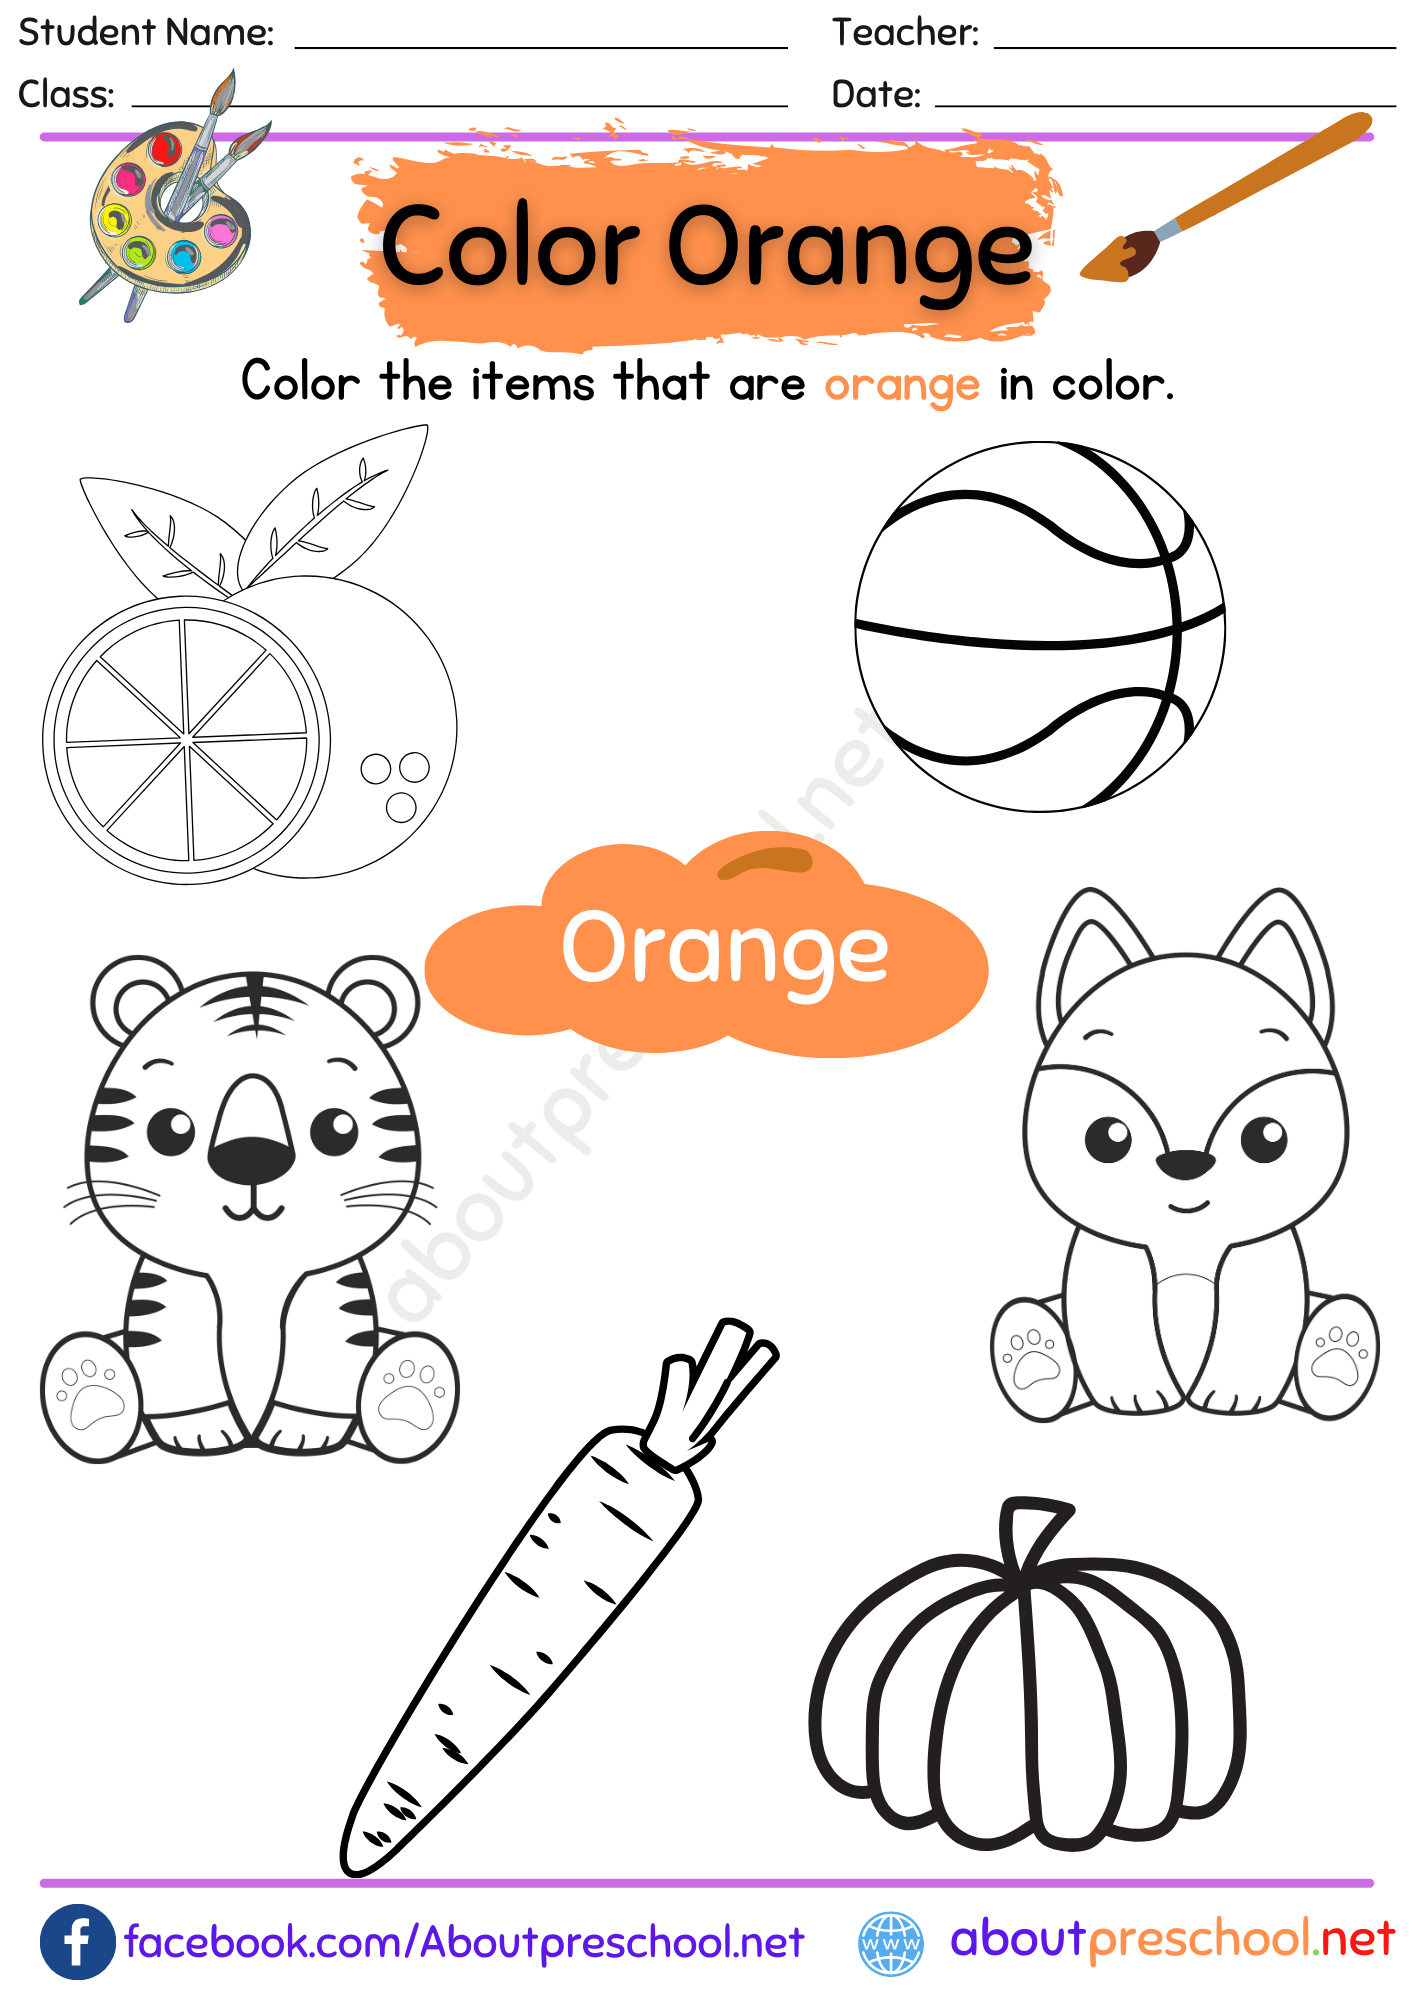 Color Orange Worksheet for Preschool